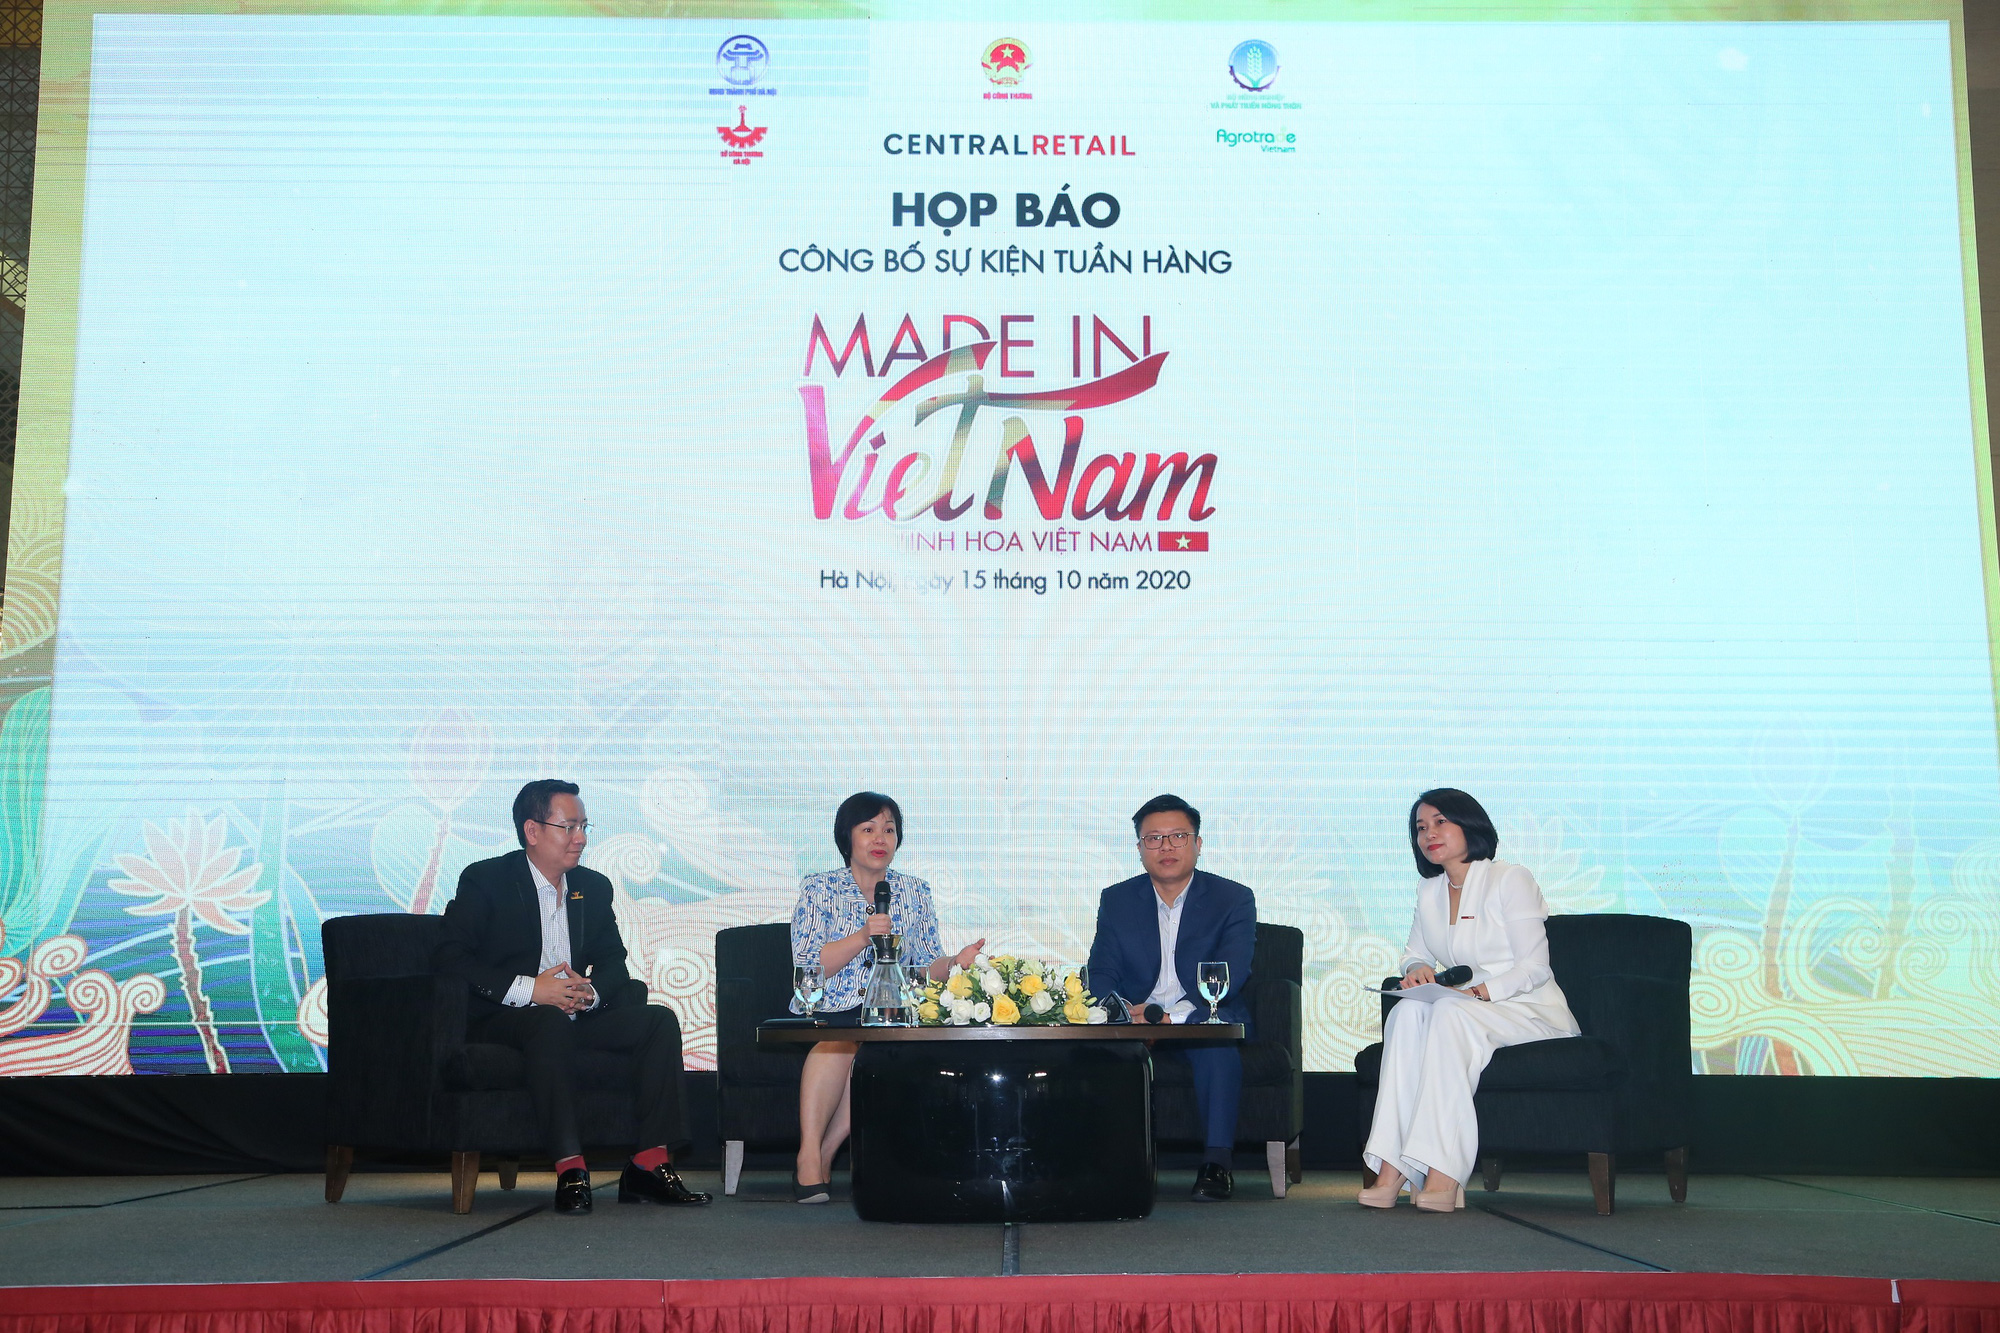 Tuần hàng ‘Made in Vietnam’: Cơ hội khai thác thị trường nội địa - Ảnh 1.